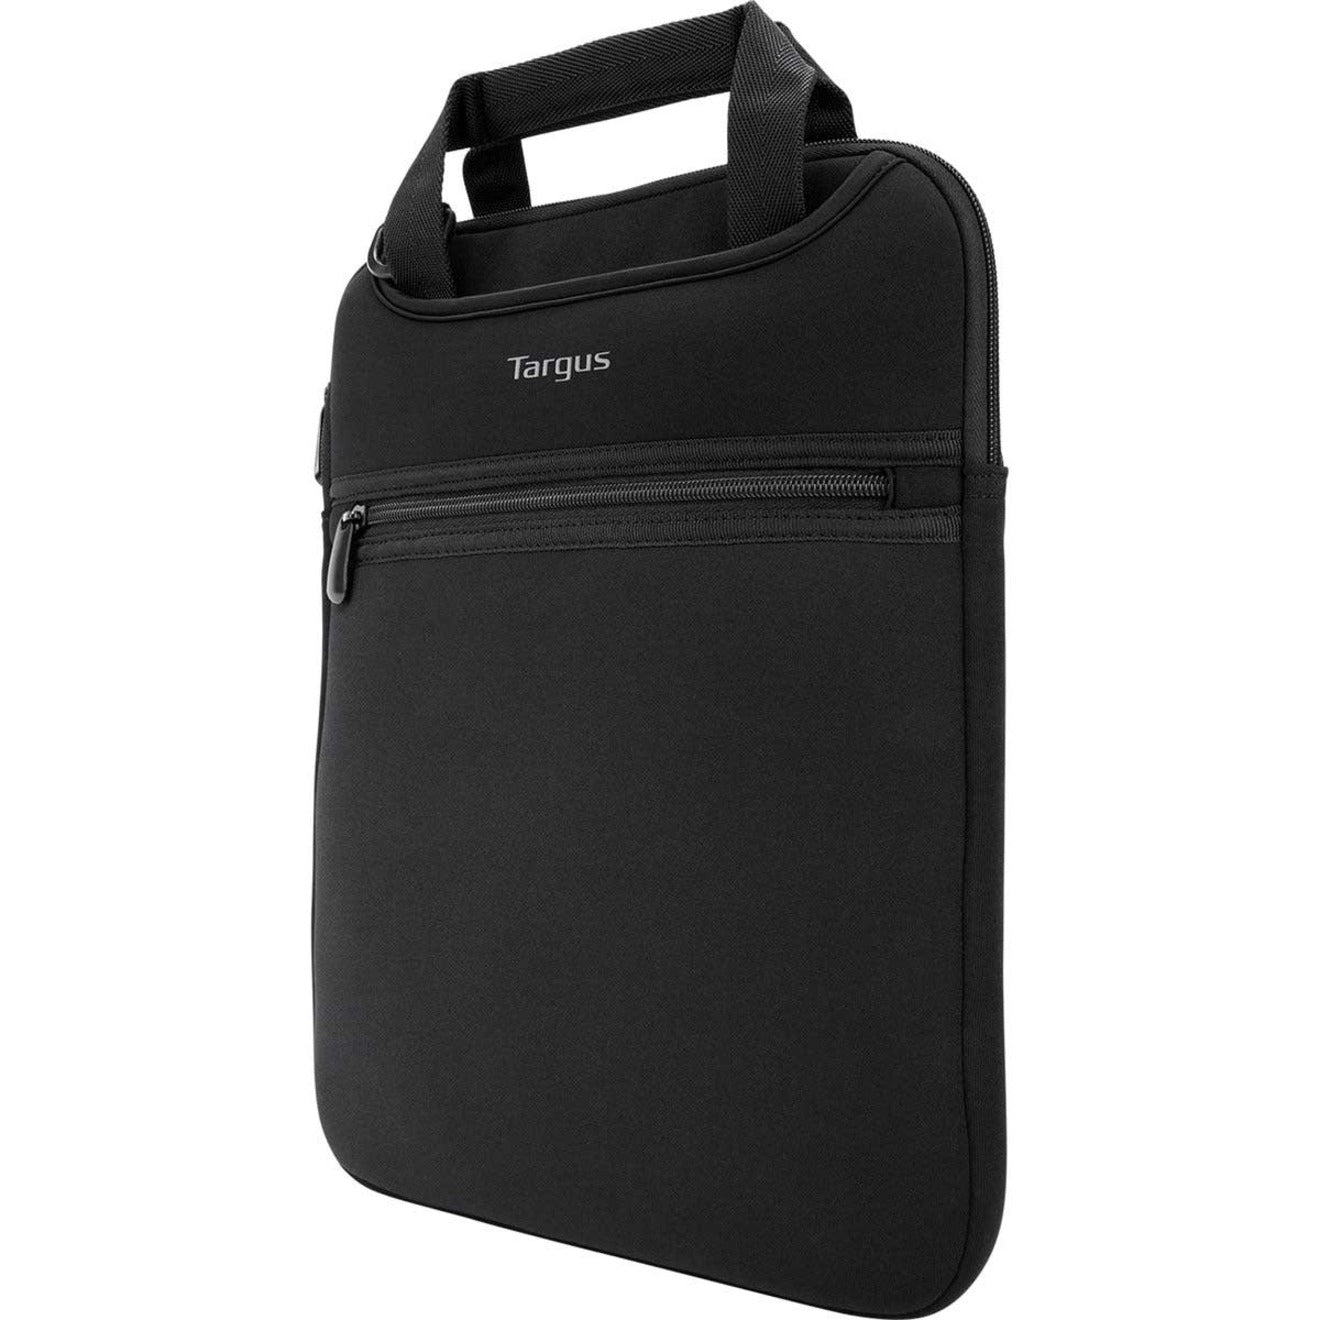 Targus TSS913 Slipcase Carrying Case for 14" Notebook, Black